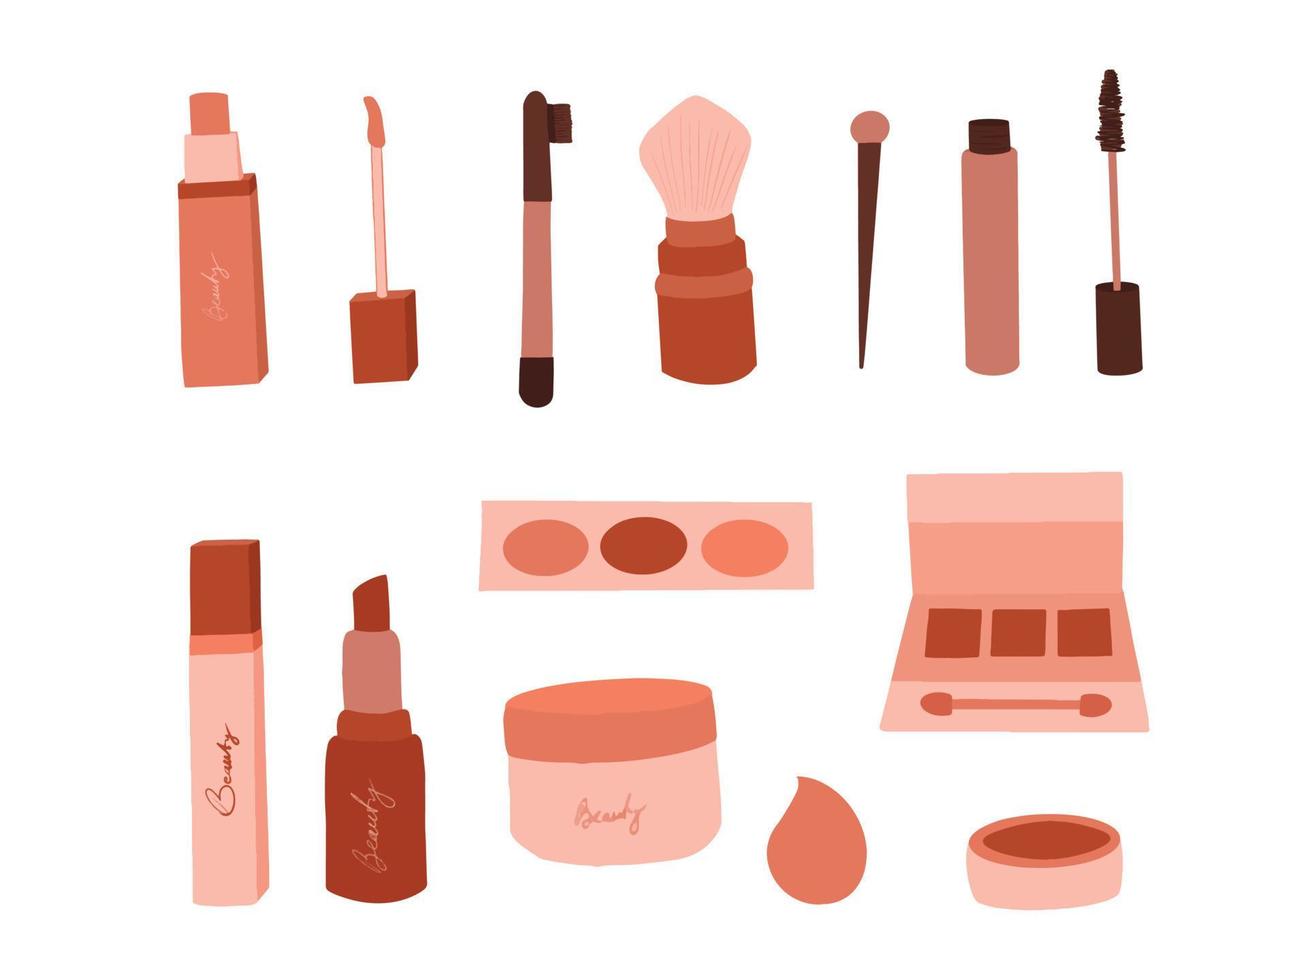 schoonheid producten, schoonheidsmiddelen voor huid en haar- zorg reeks vector illustraties van flessen, buizen, en pot